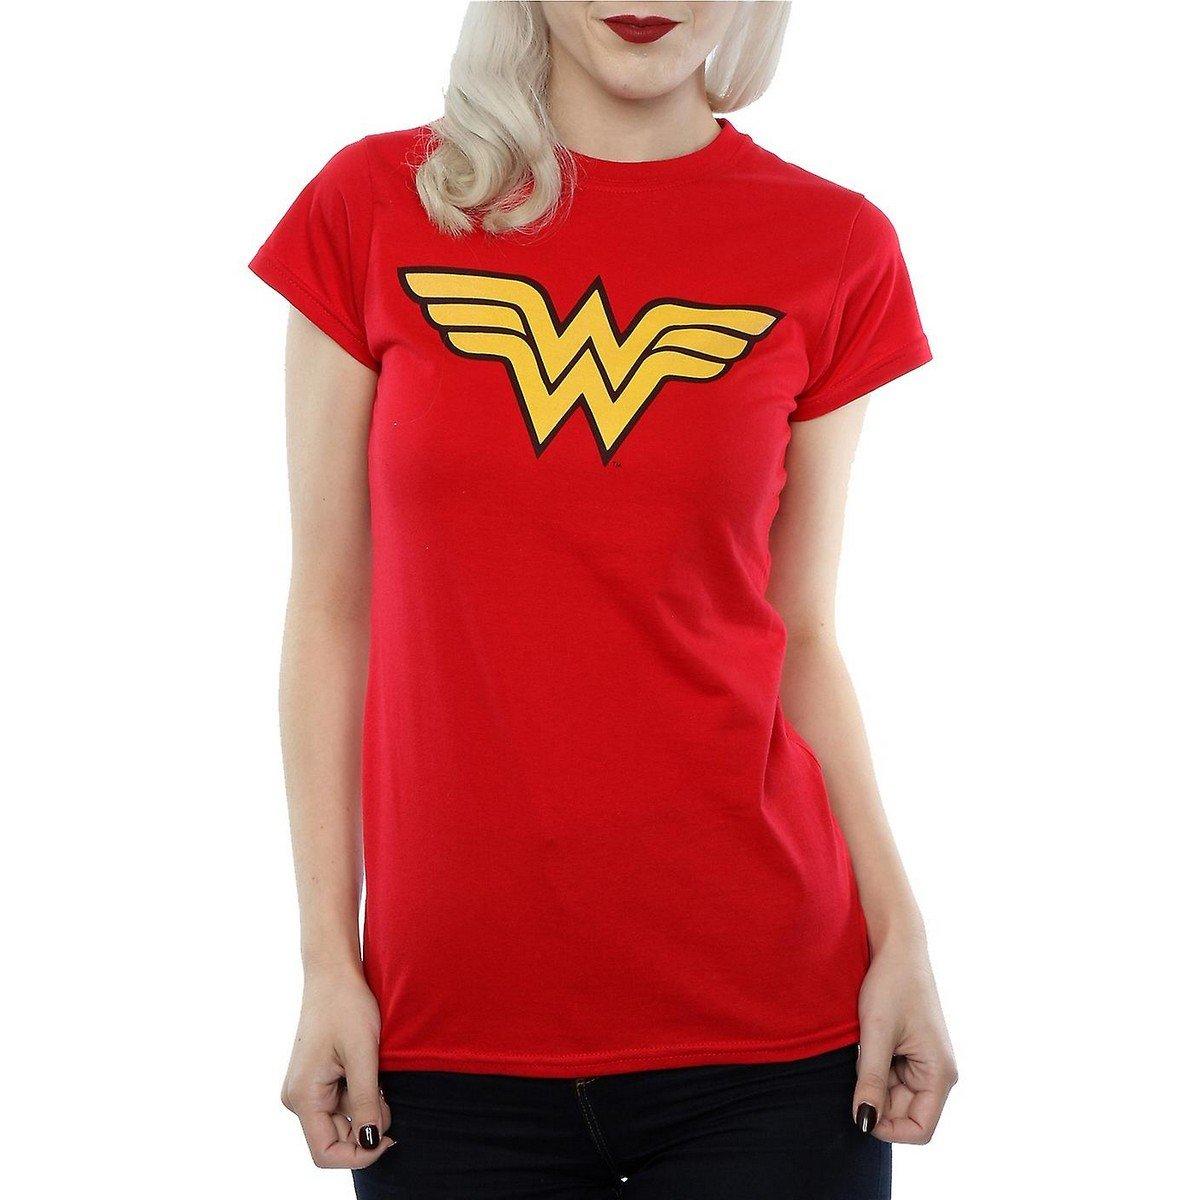 Tshirt Damen Rot Bunt S von Wonder Woman